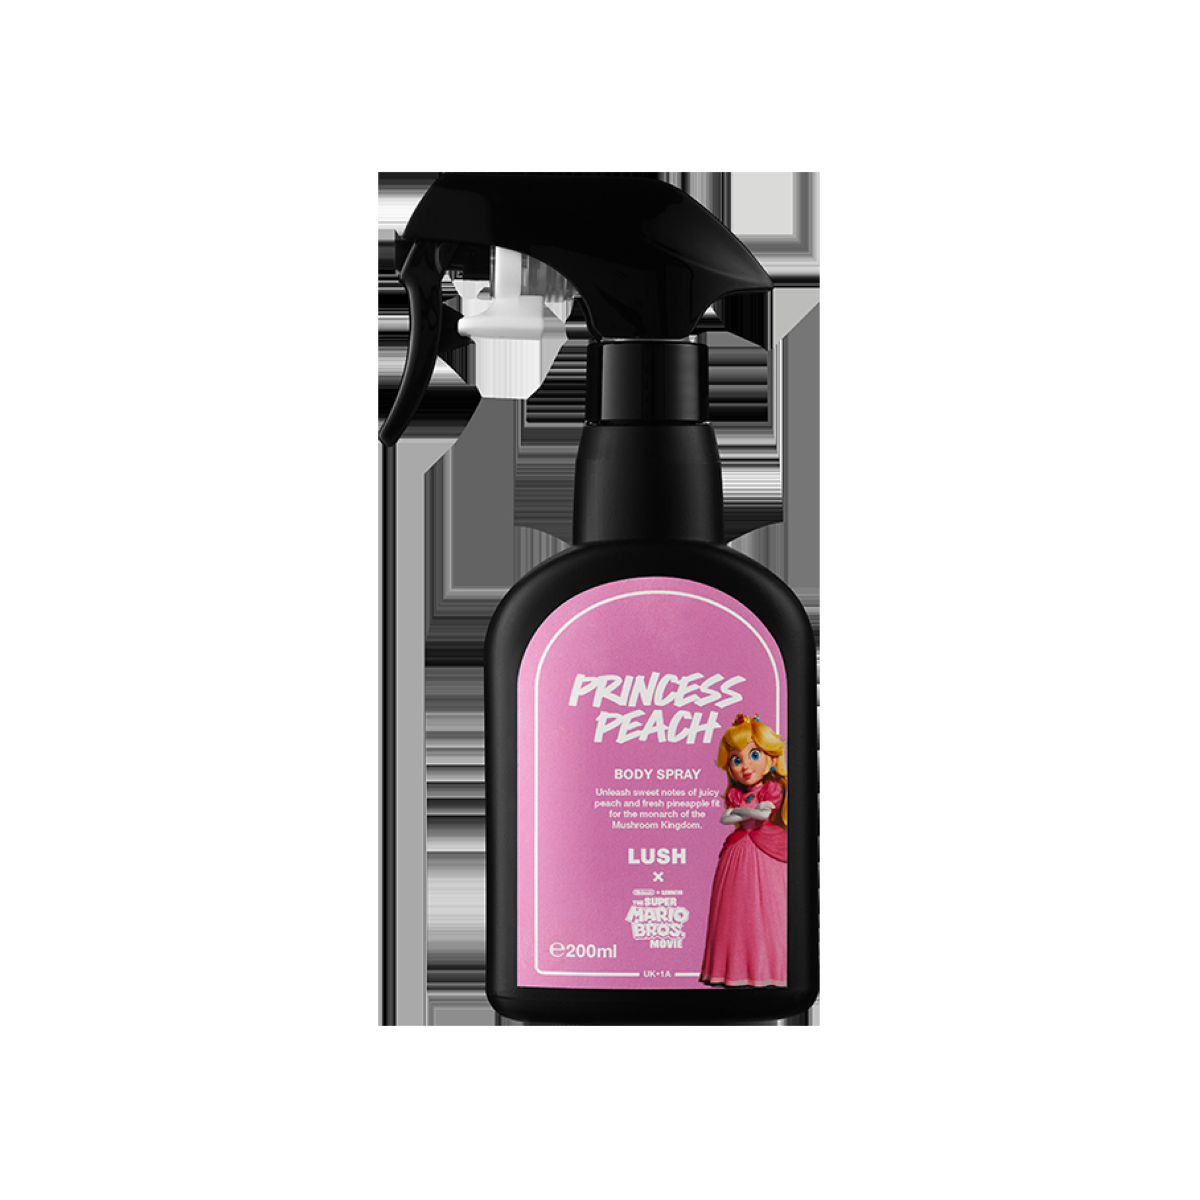 Princess Peach Body Spray